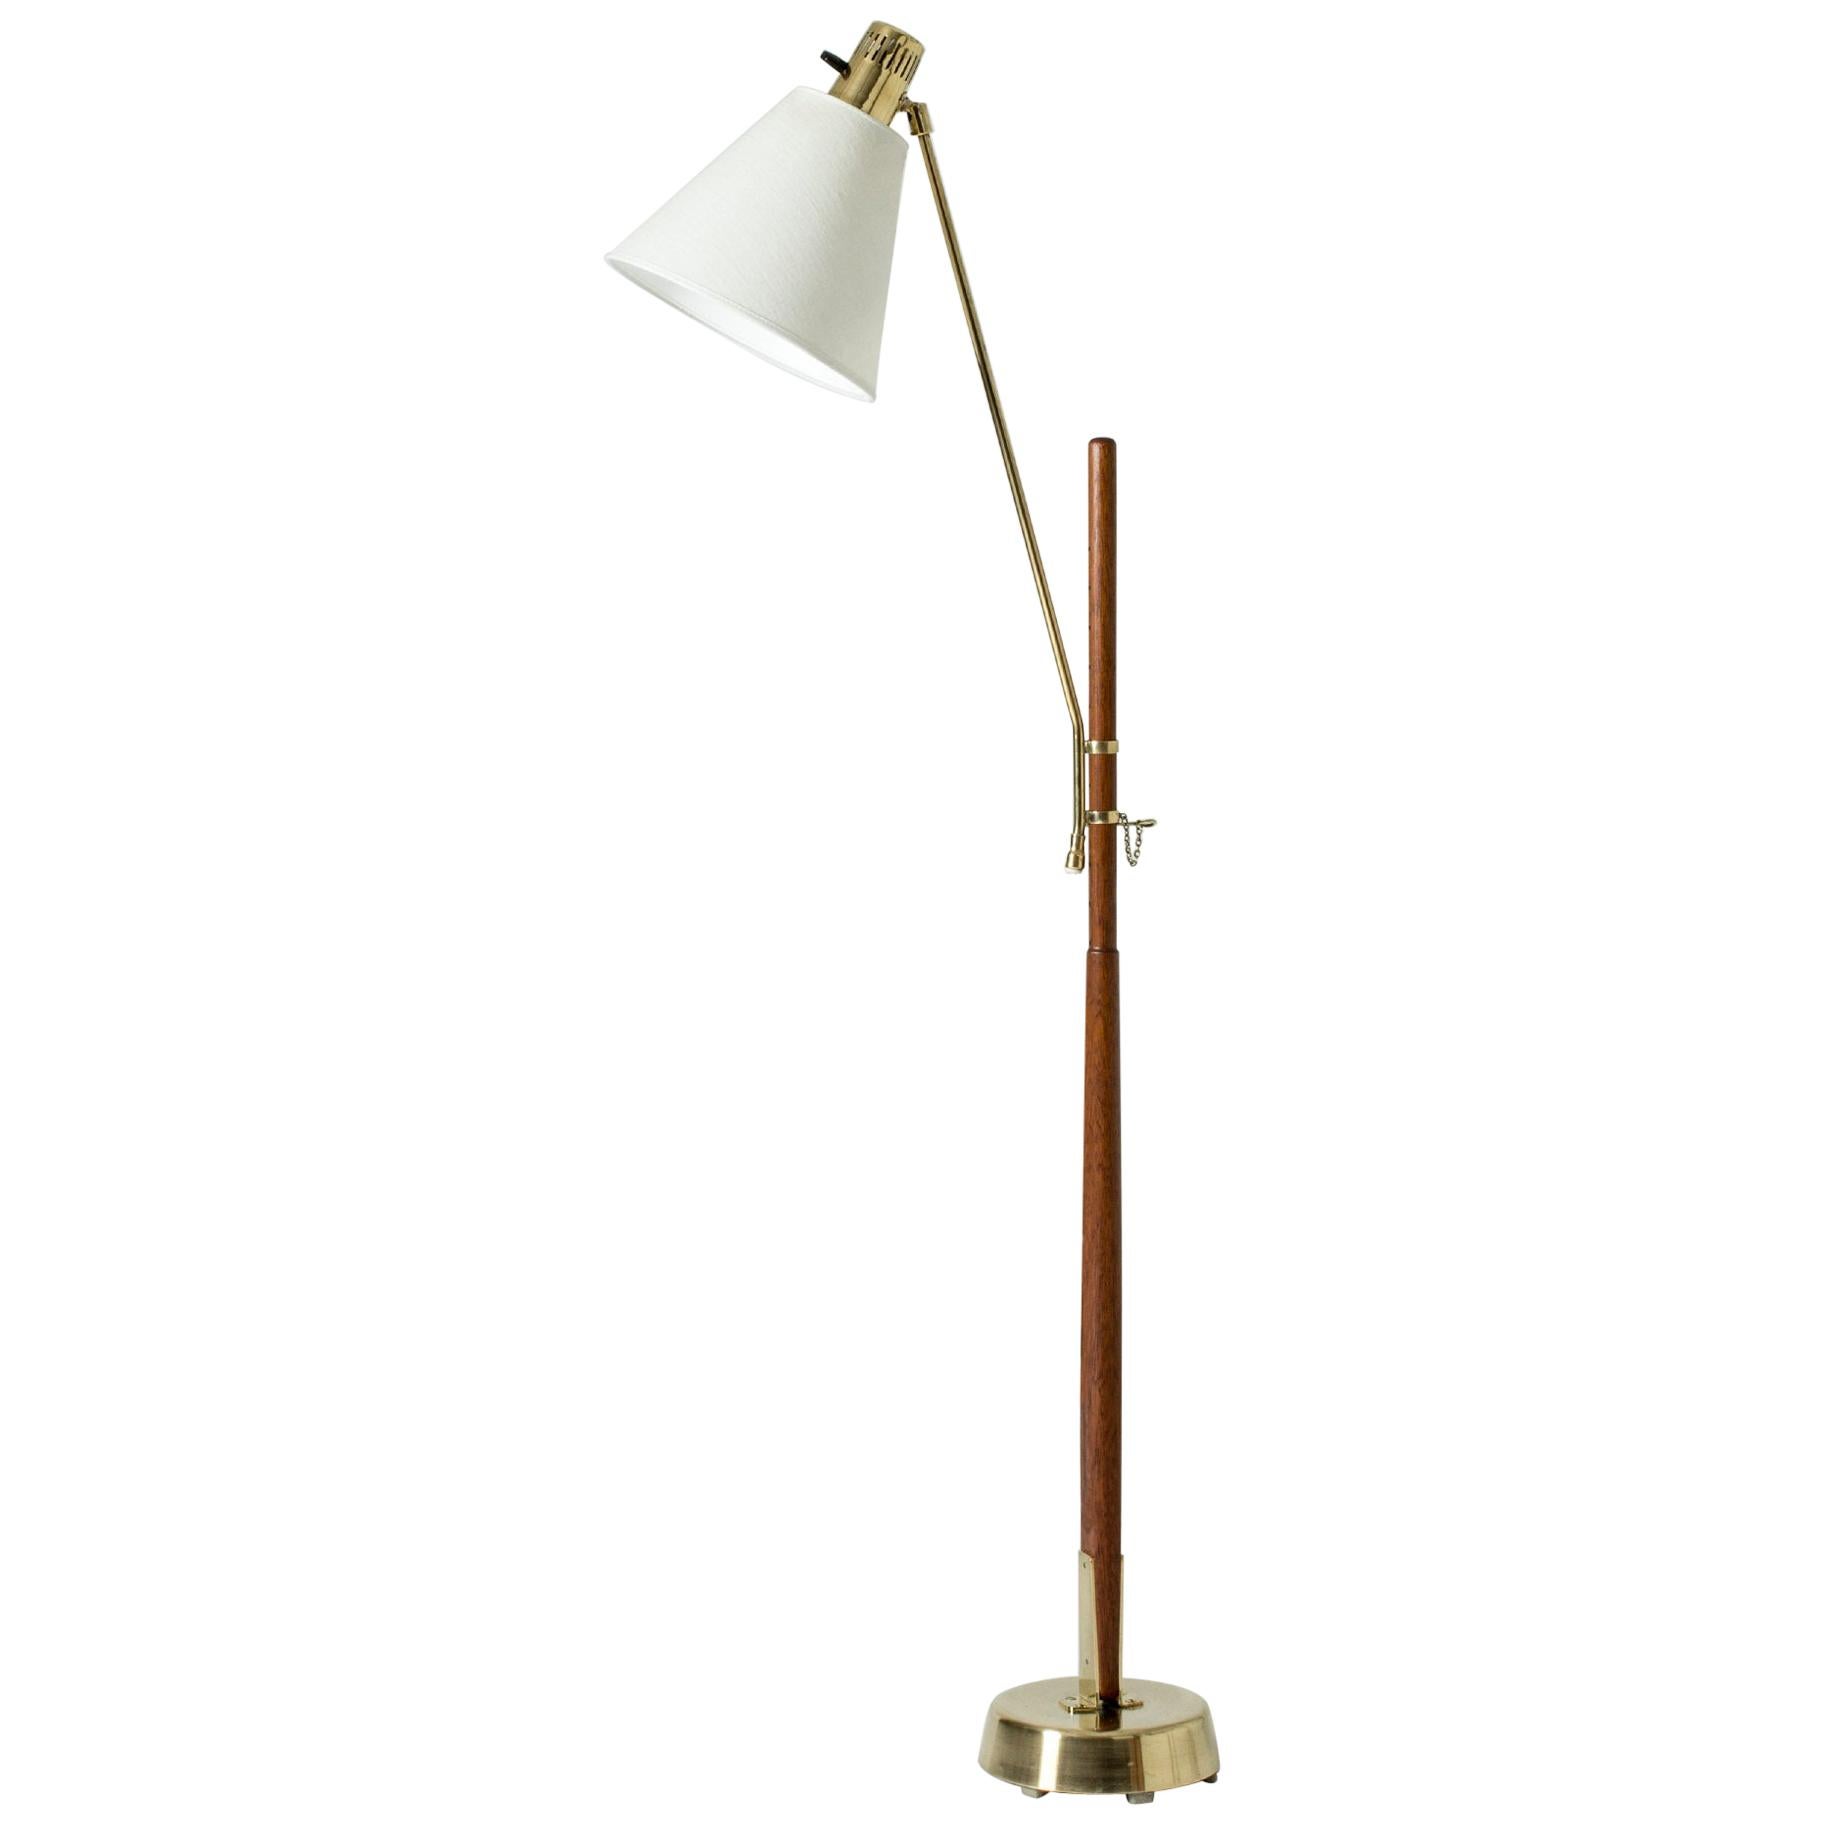 Brass and Teak Floor Lamp by Hans Bergström for Atelj�é Lyktan